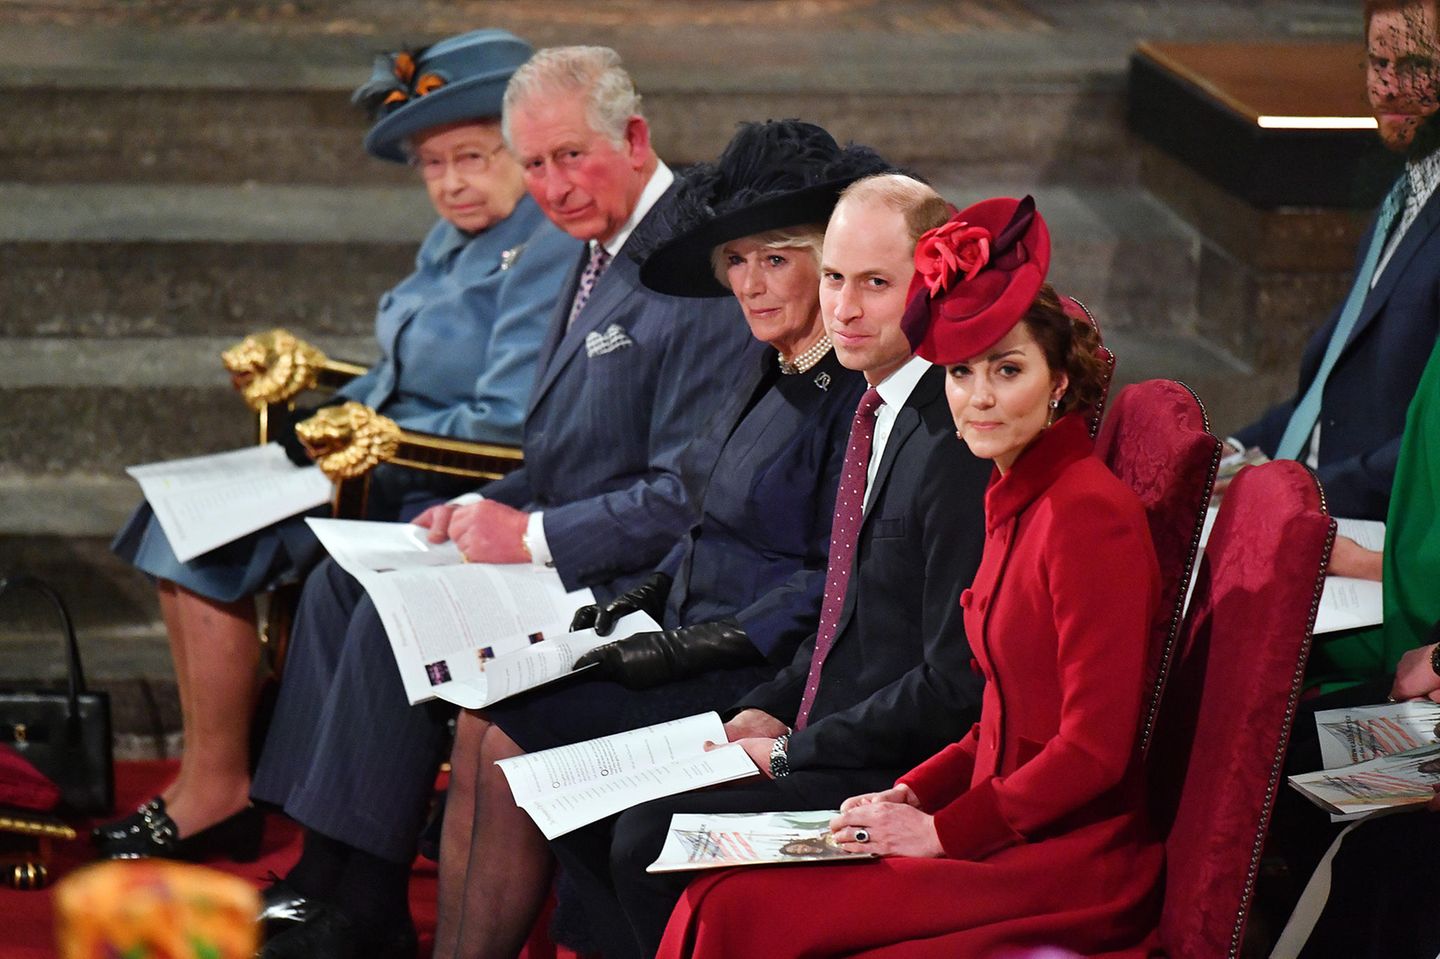 Die Queen als Oberhaupt der Familie Windsor sitzt ganz vorne in der ersten Reihe. Es folgten gemäß der Rangfolge im britischen Königshaus Prinz Charles, Herzogin Camilla, Prinz William und Herzogin Catherine. Harry und Meghan sitzen dahinter, in Reihe zwei.